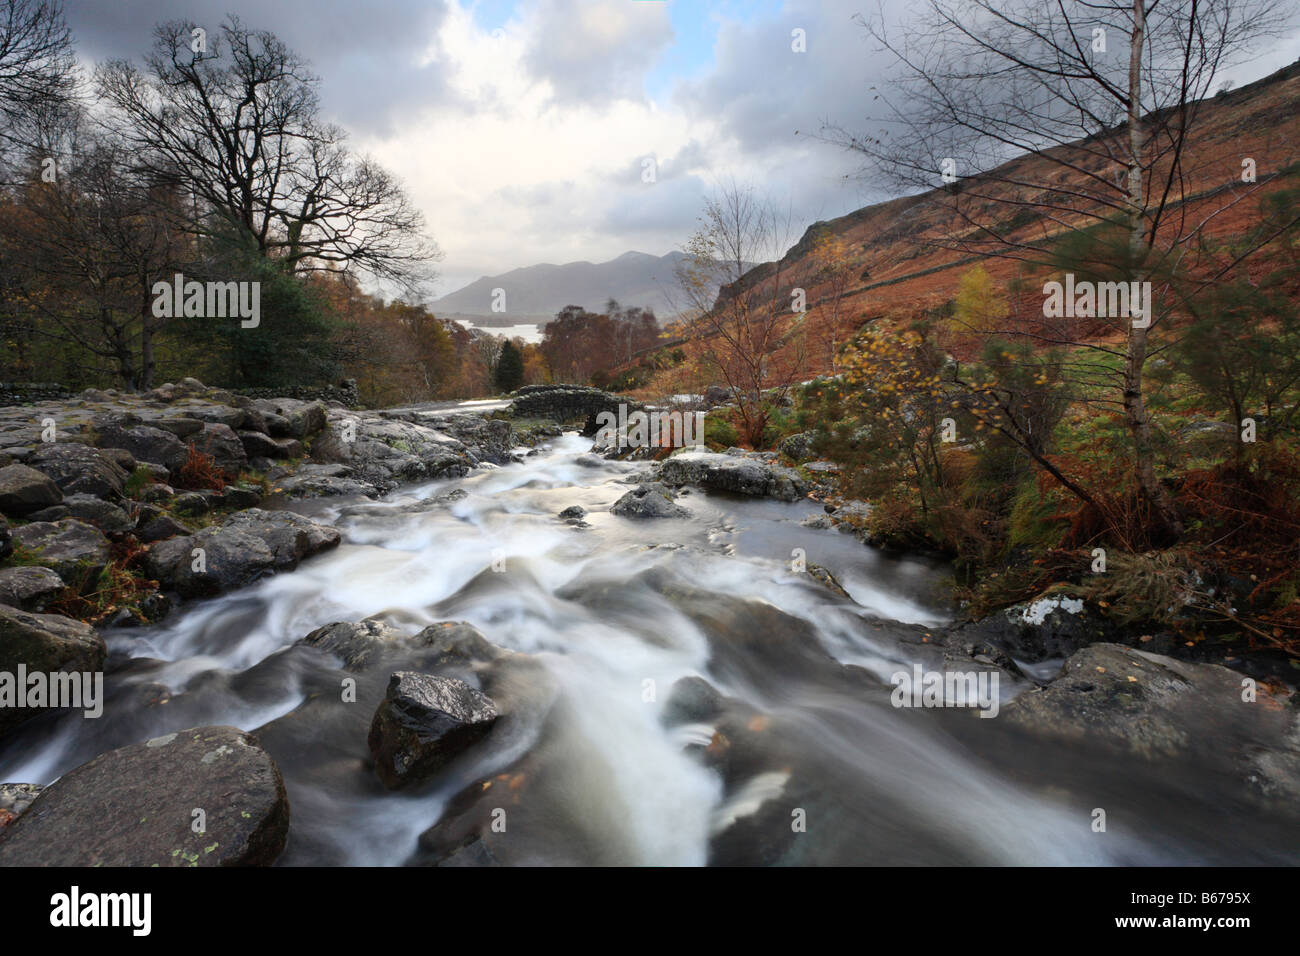 'Ashness Bridge' English Lake District, waterfall, rushing water, river. Stock Photo